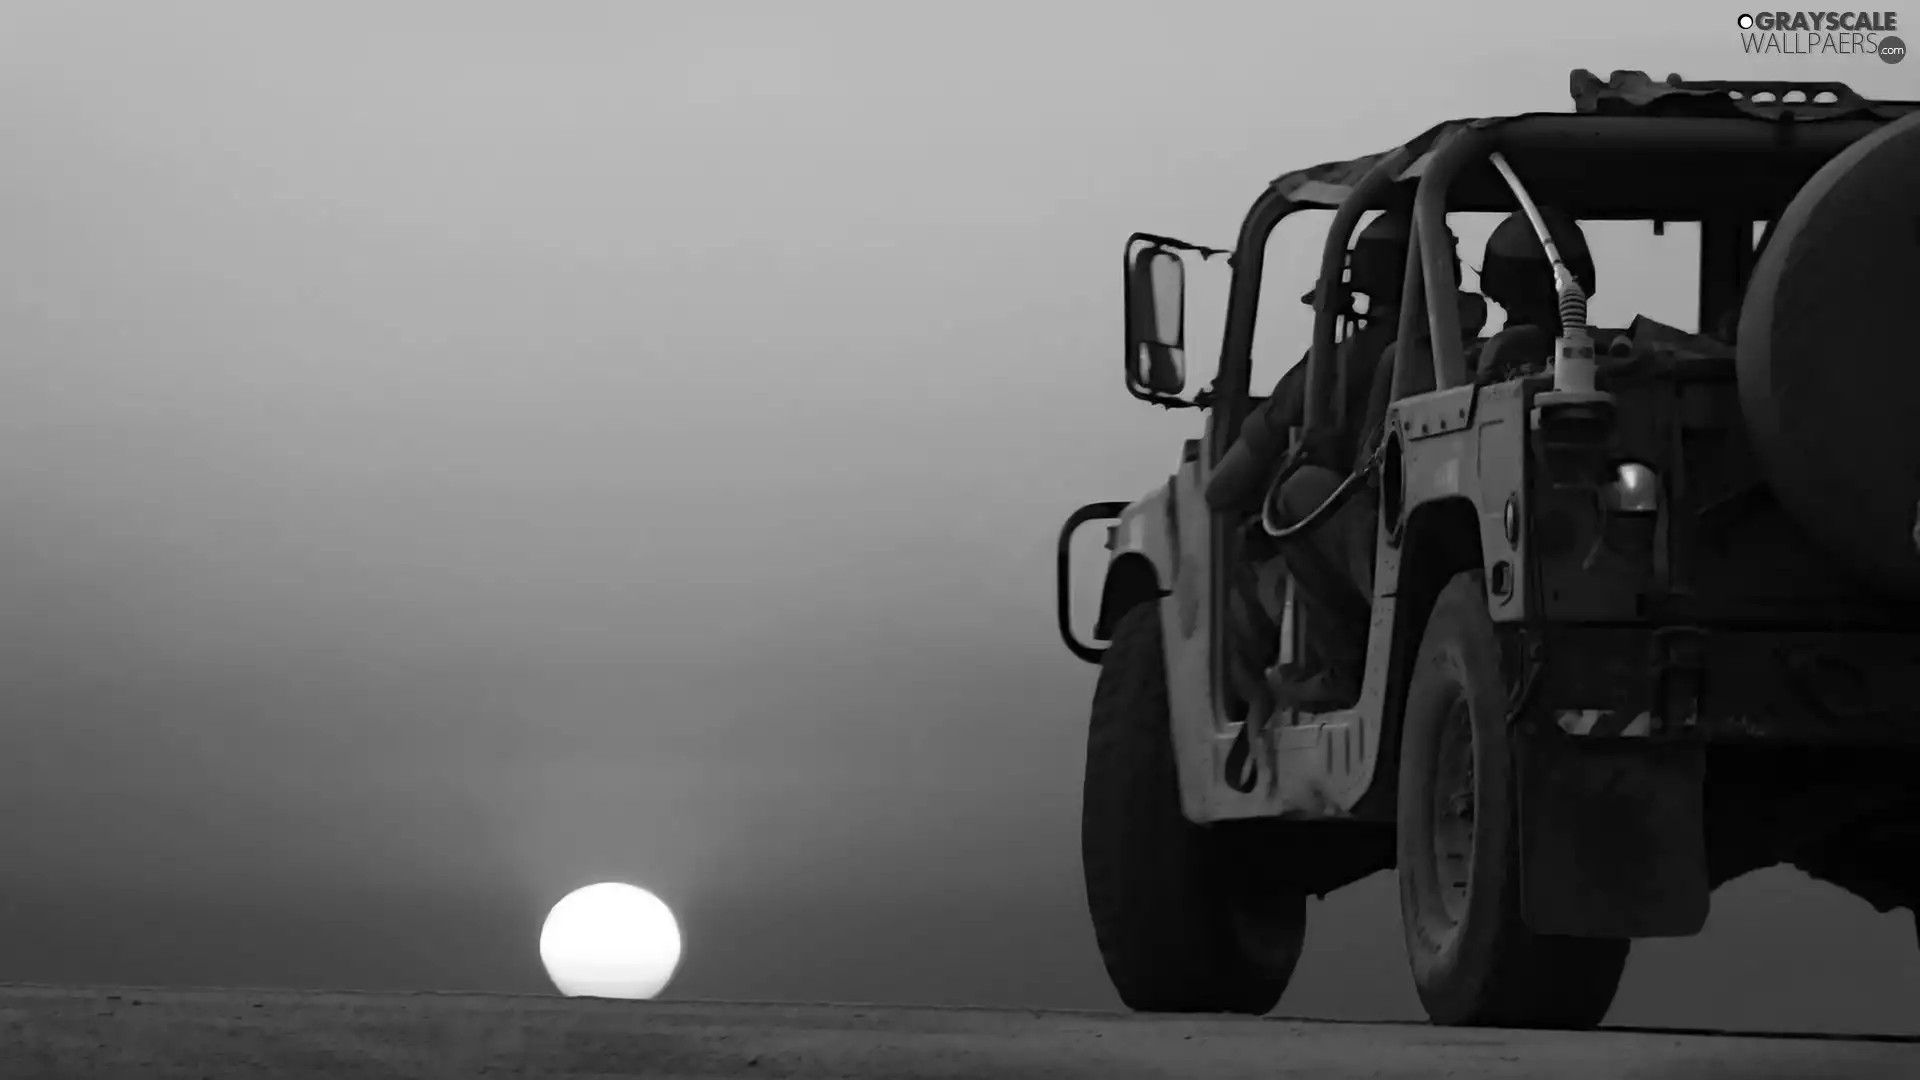 Military truck, Desert, Great Sunsets, hummer